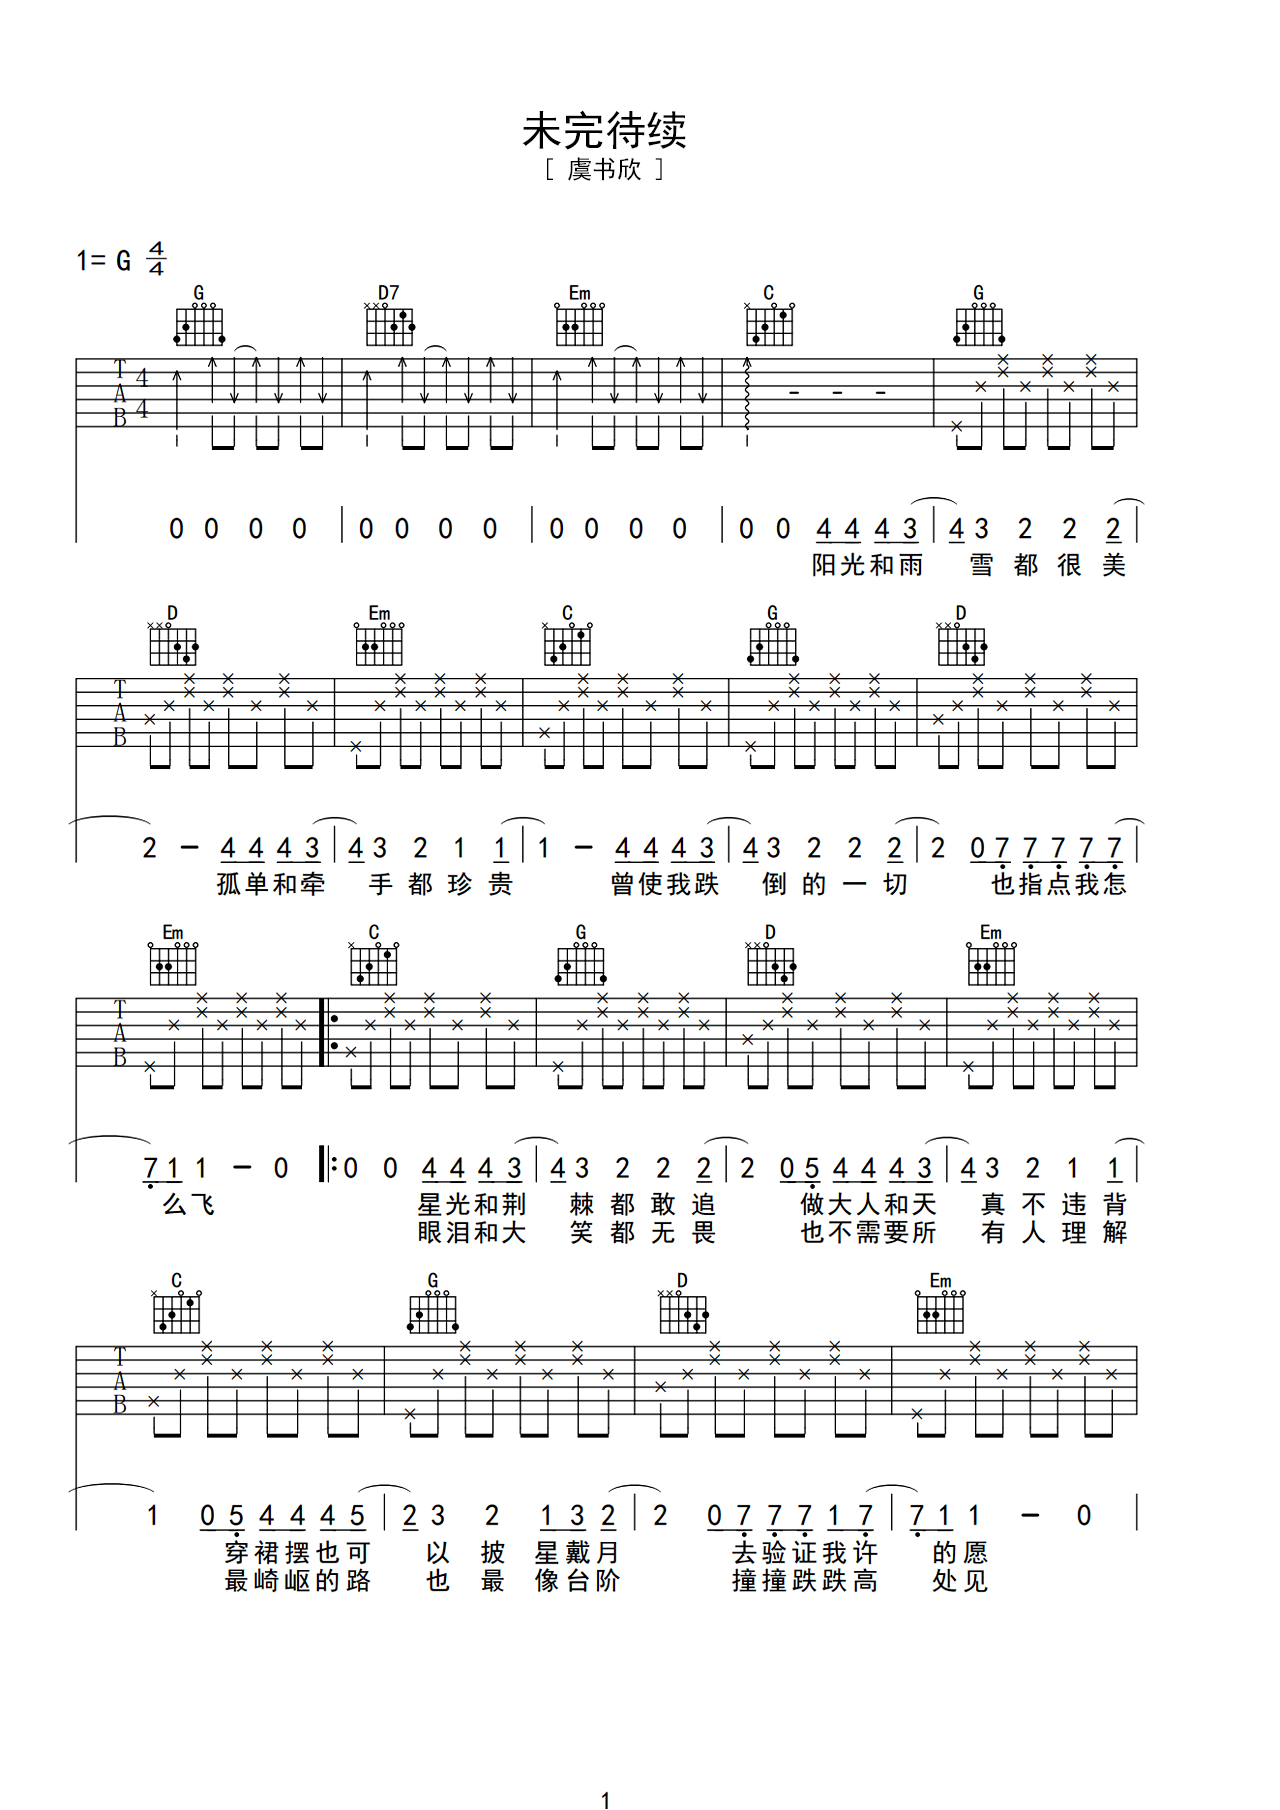 柏松的完整版吉他六线谱《寻常岁月诗》- 初级国语吉他谱 - C#调指法编配 - 变调夹Capo=0 - 易谱库